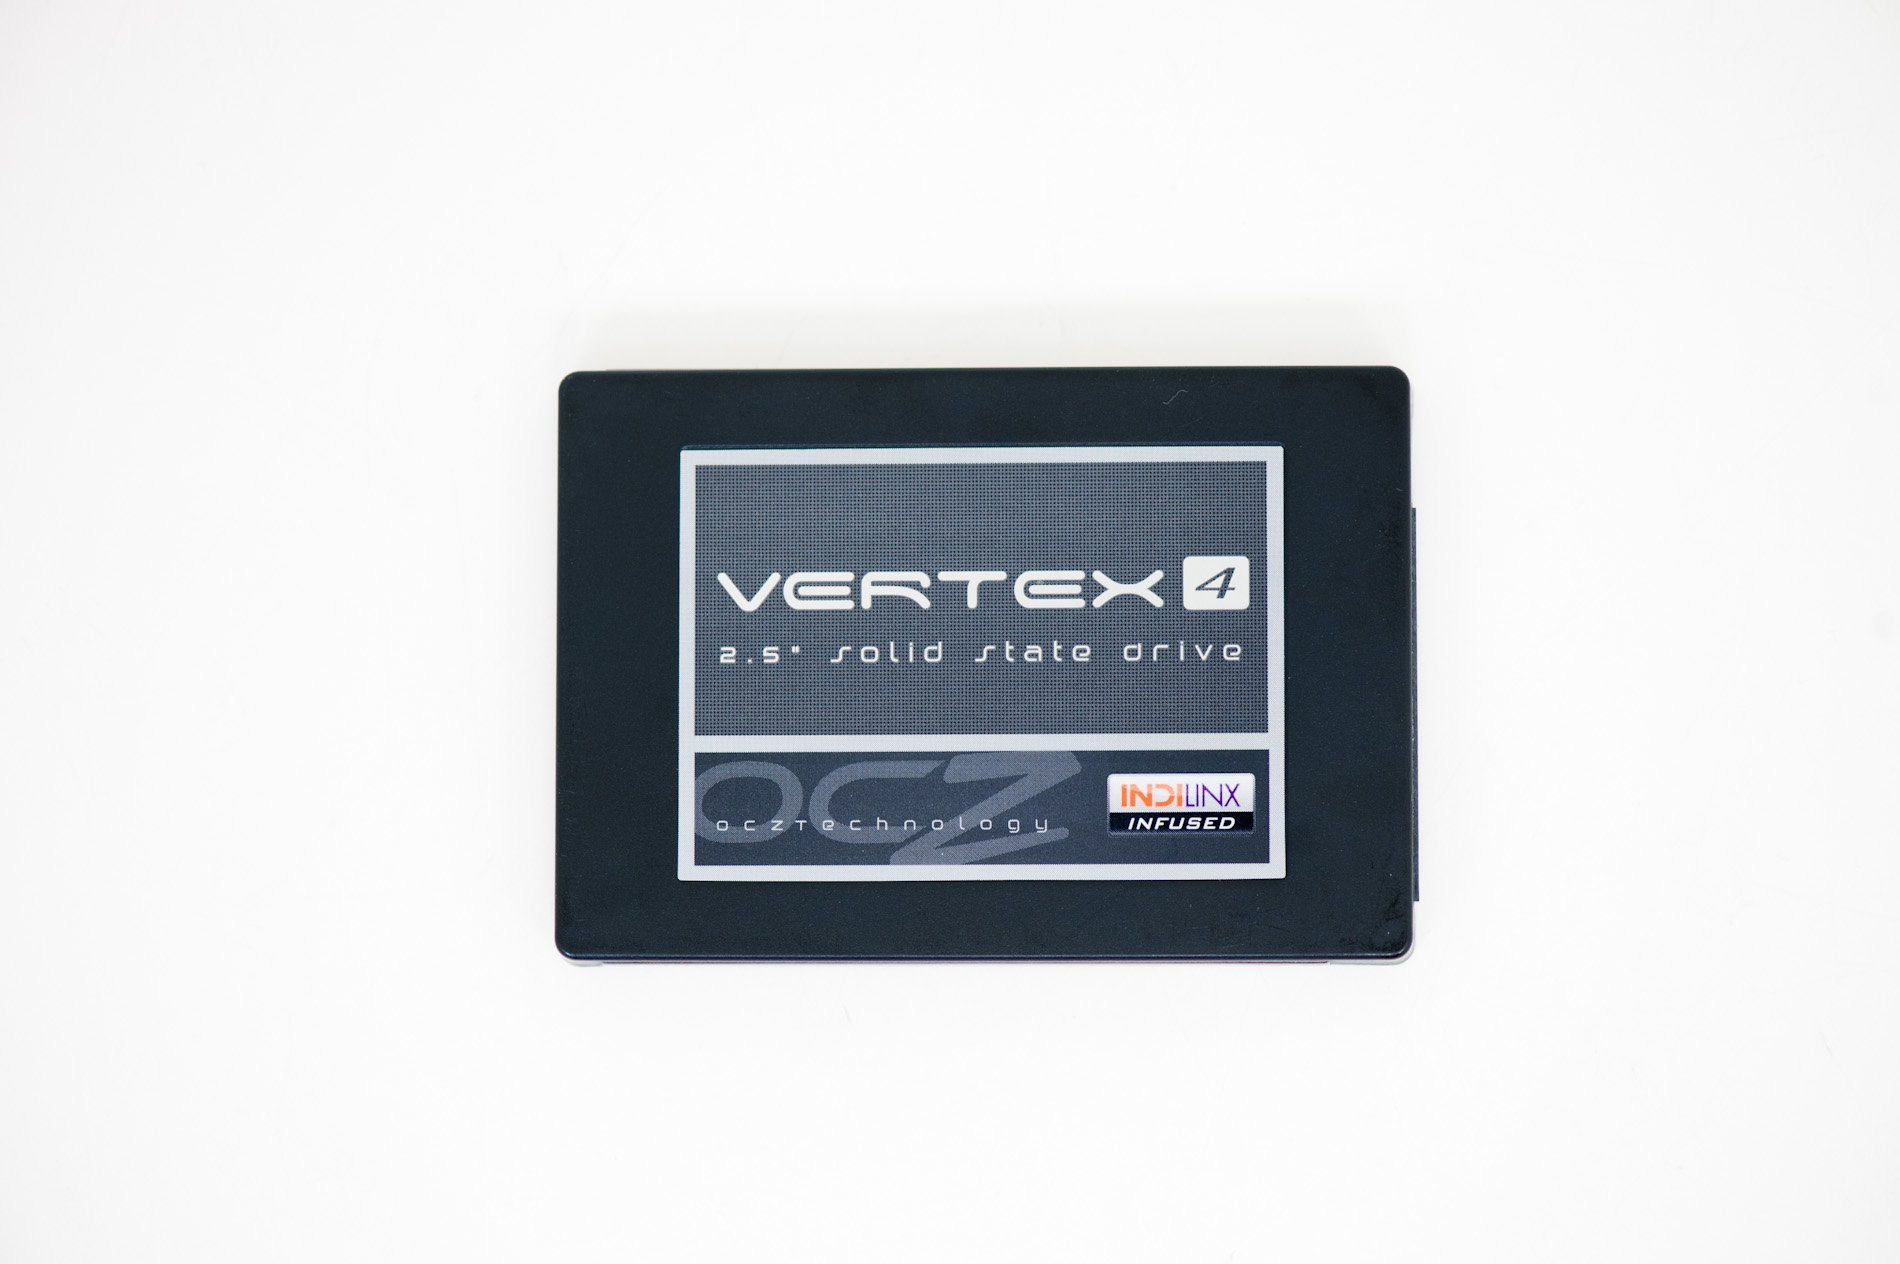 Ocz Vertex 4 Vs Crucial M4 64Gb